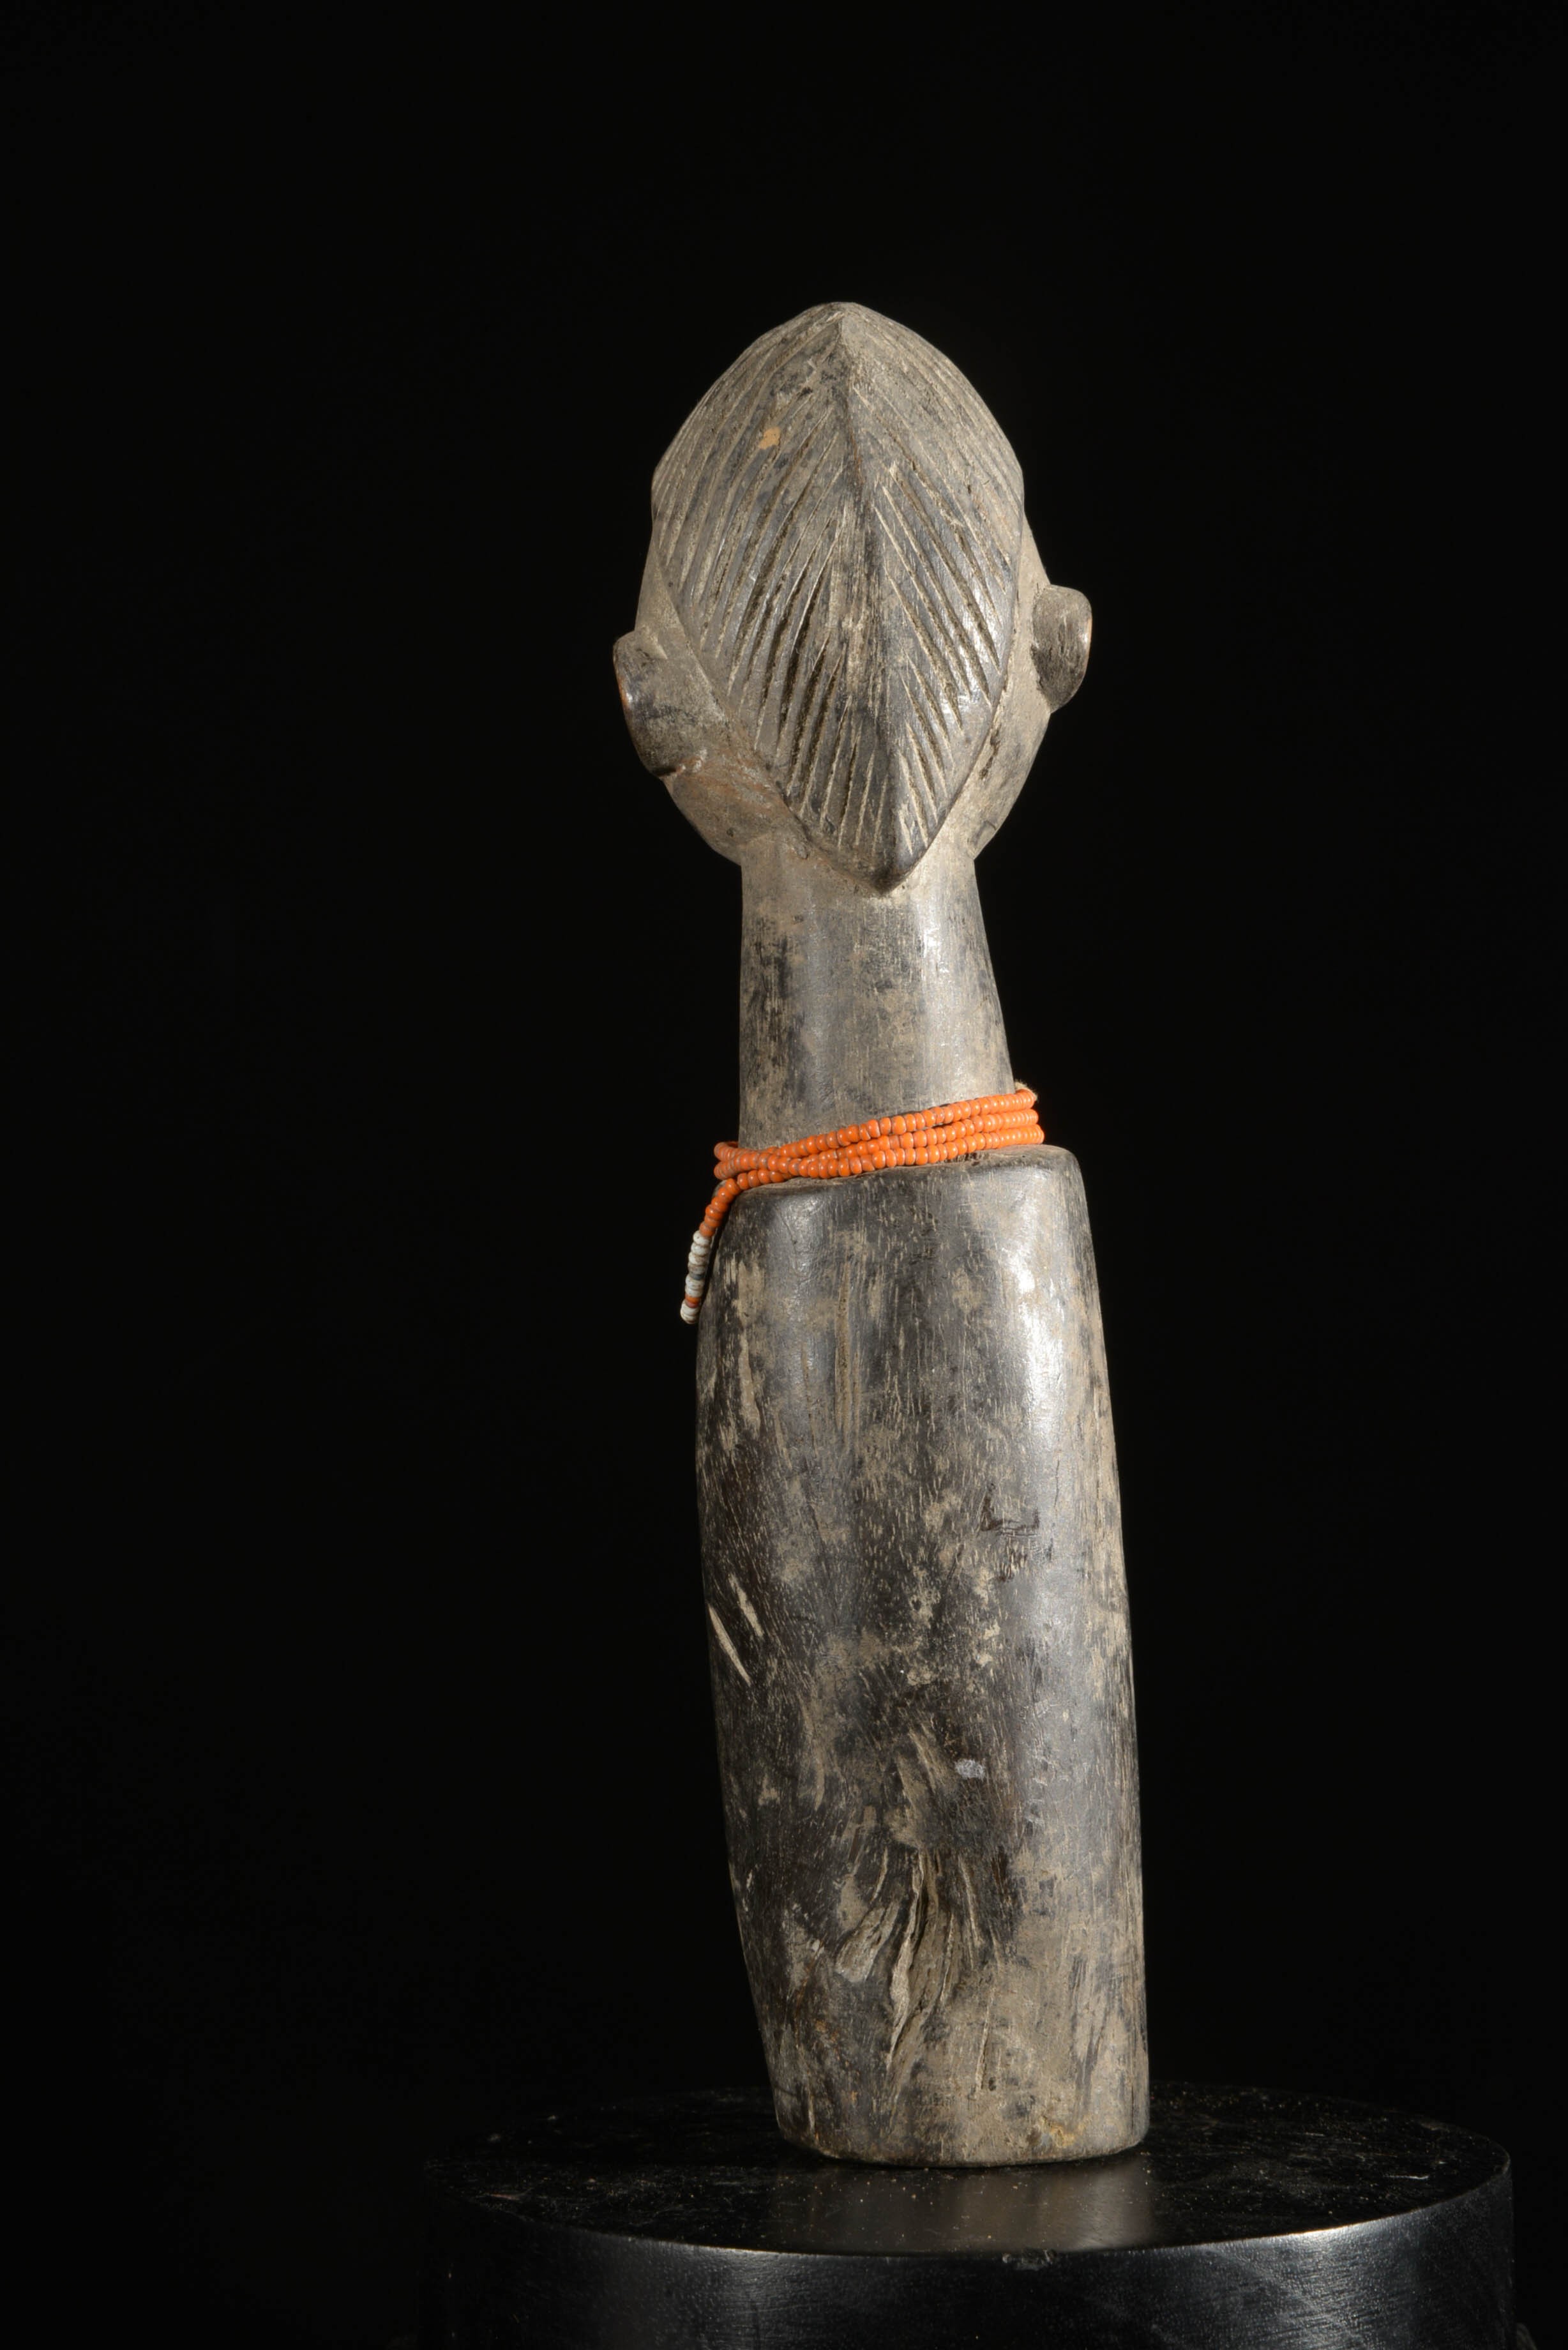 Poupee de fecondite - Baoulé - Côte d'Ivoire